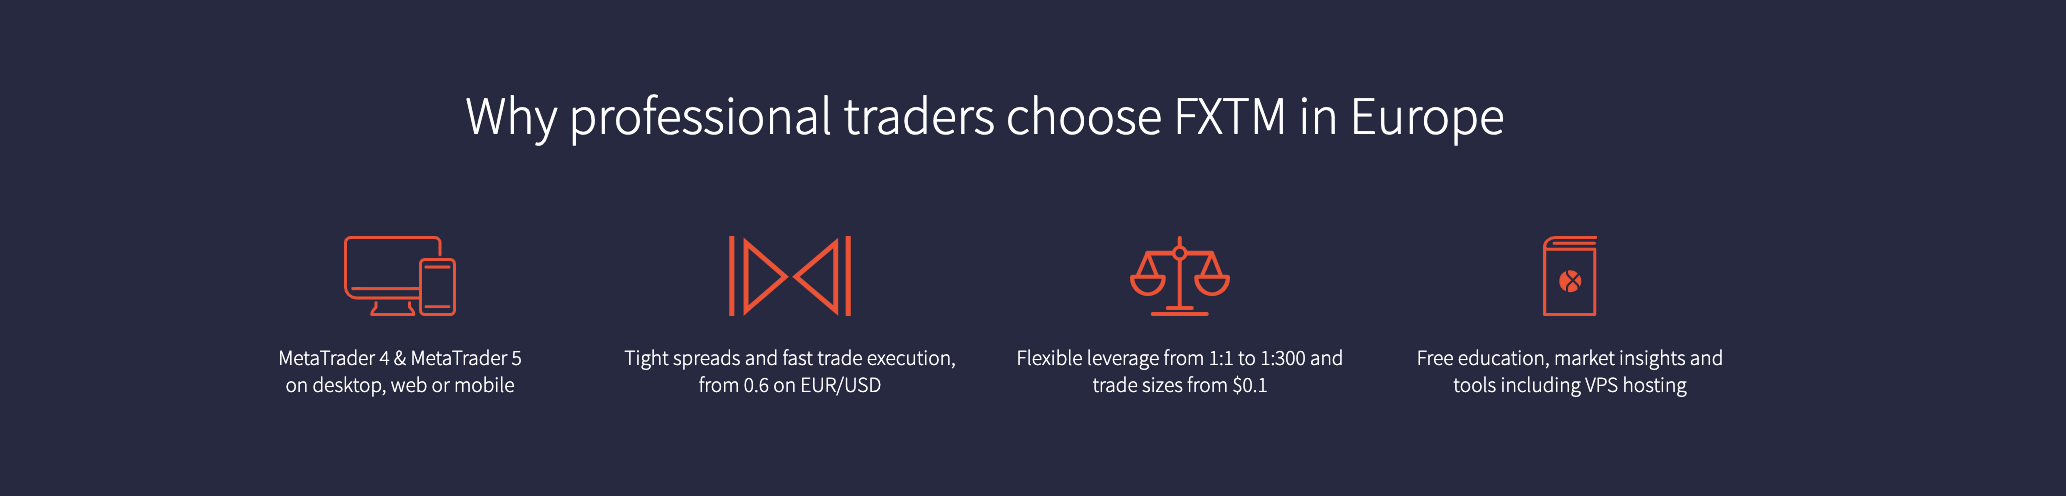 Những lợi ích khi giao dịch với FXTM